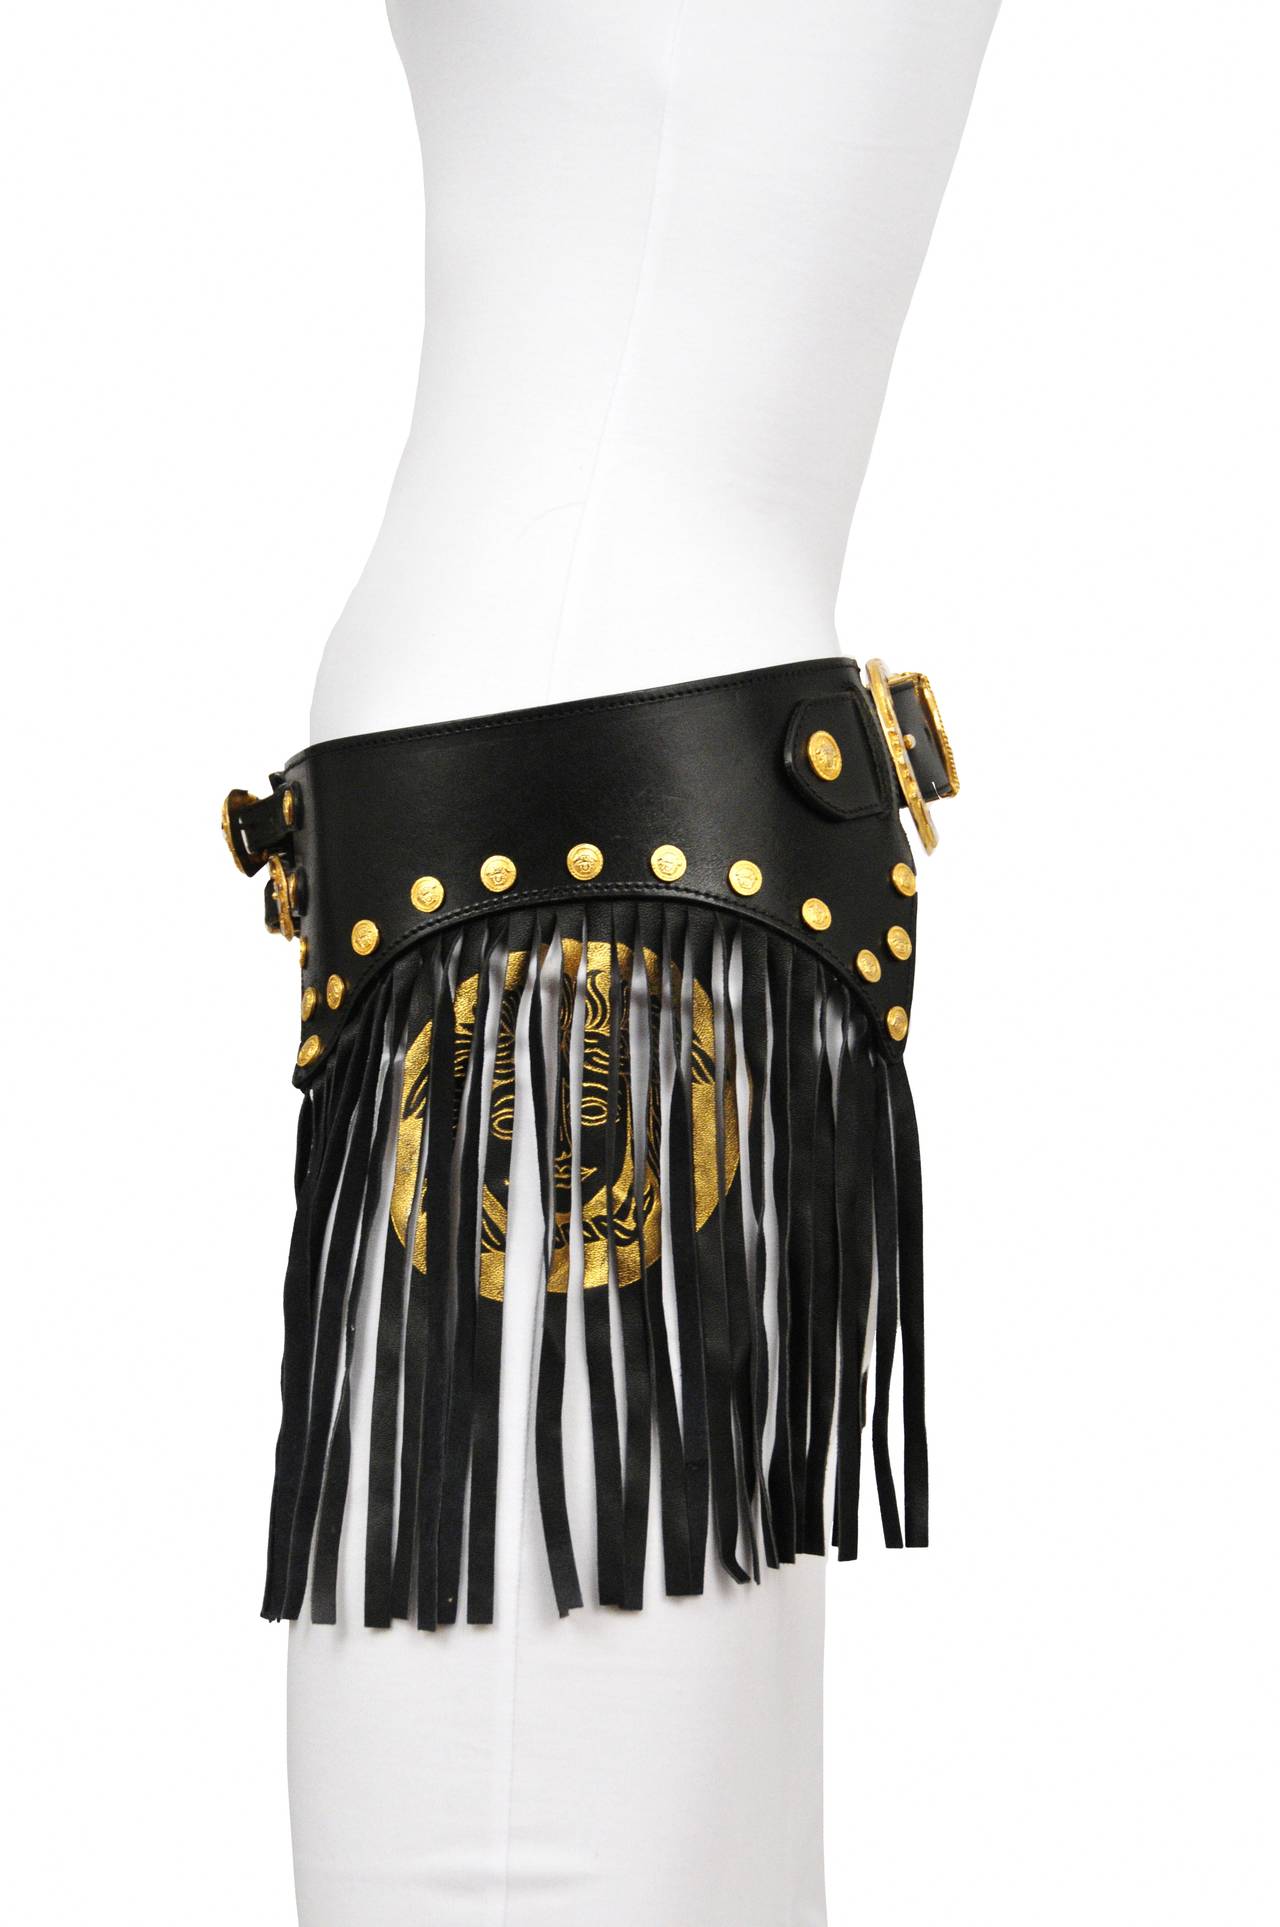 Vintage Gianni Versace black leather bondage belt with gold buckle detail and medusa emblem printed on fringe.